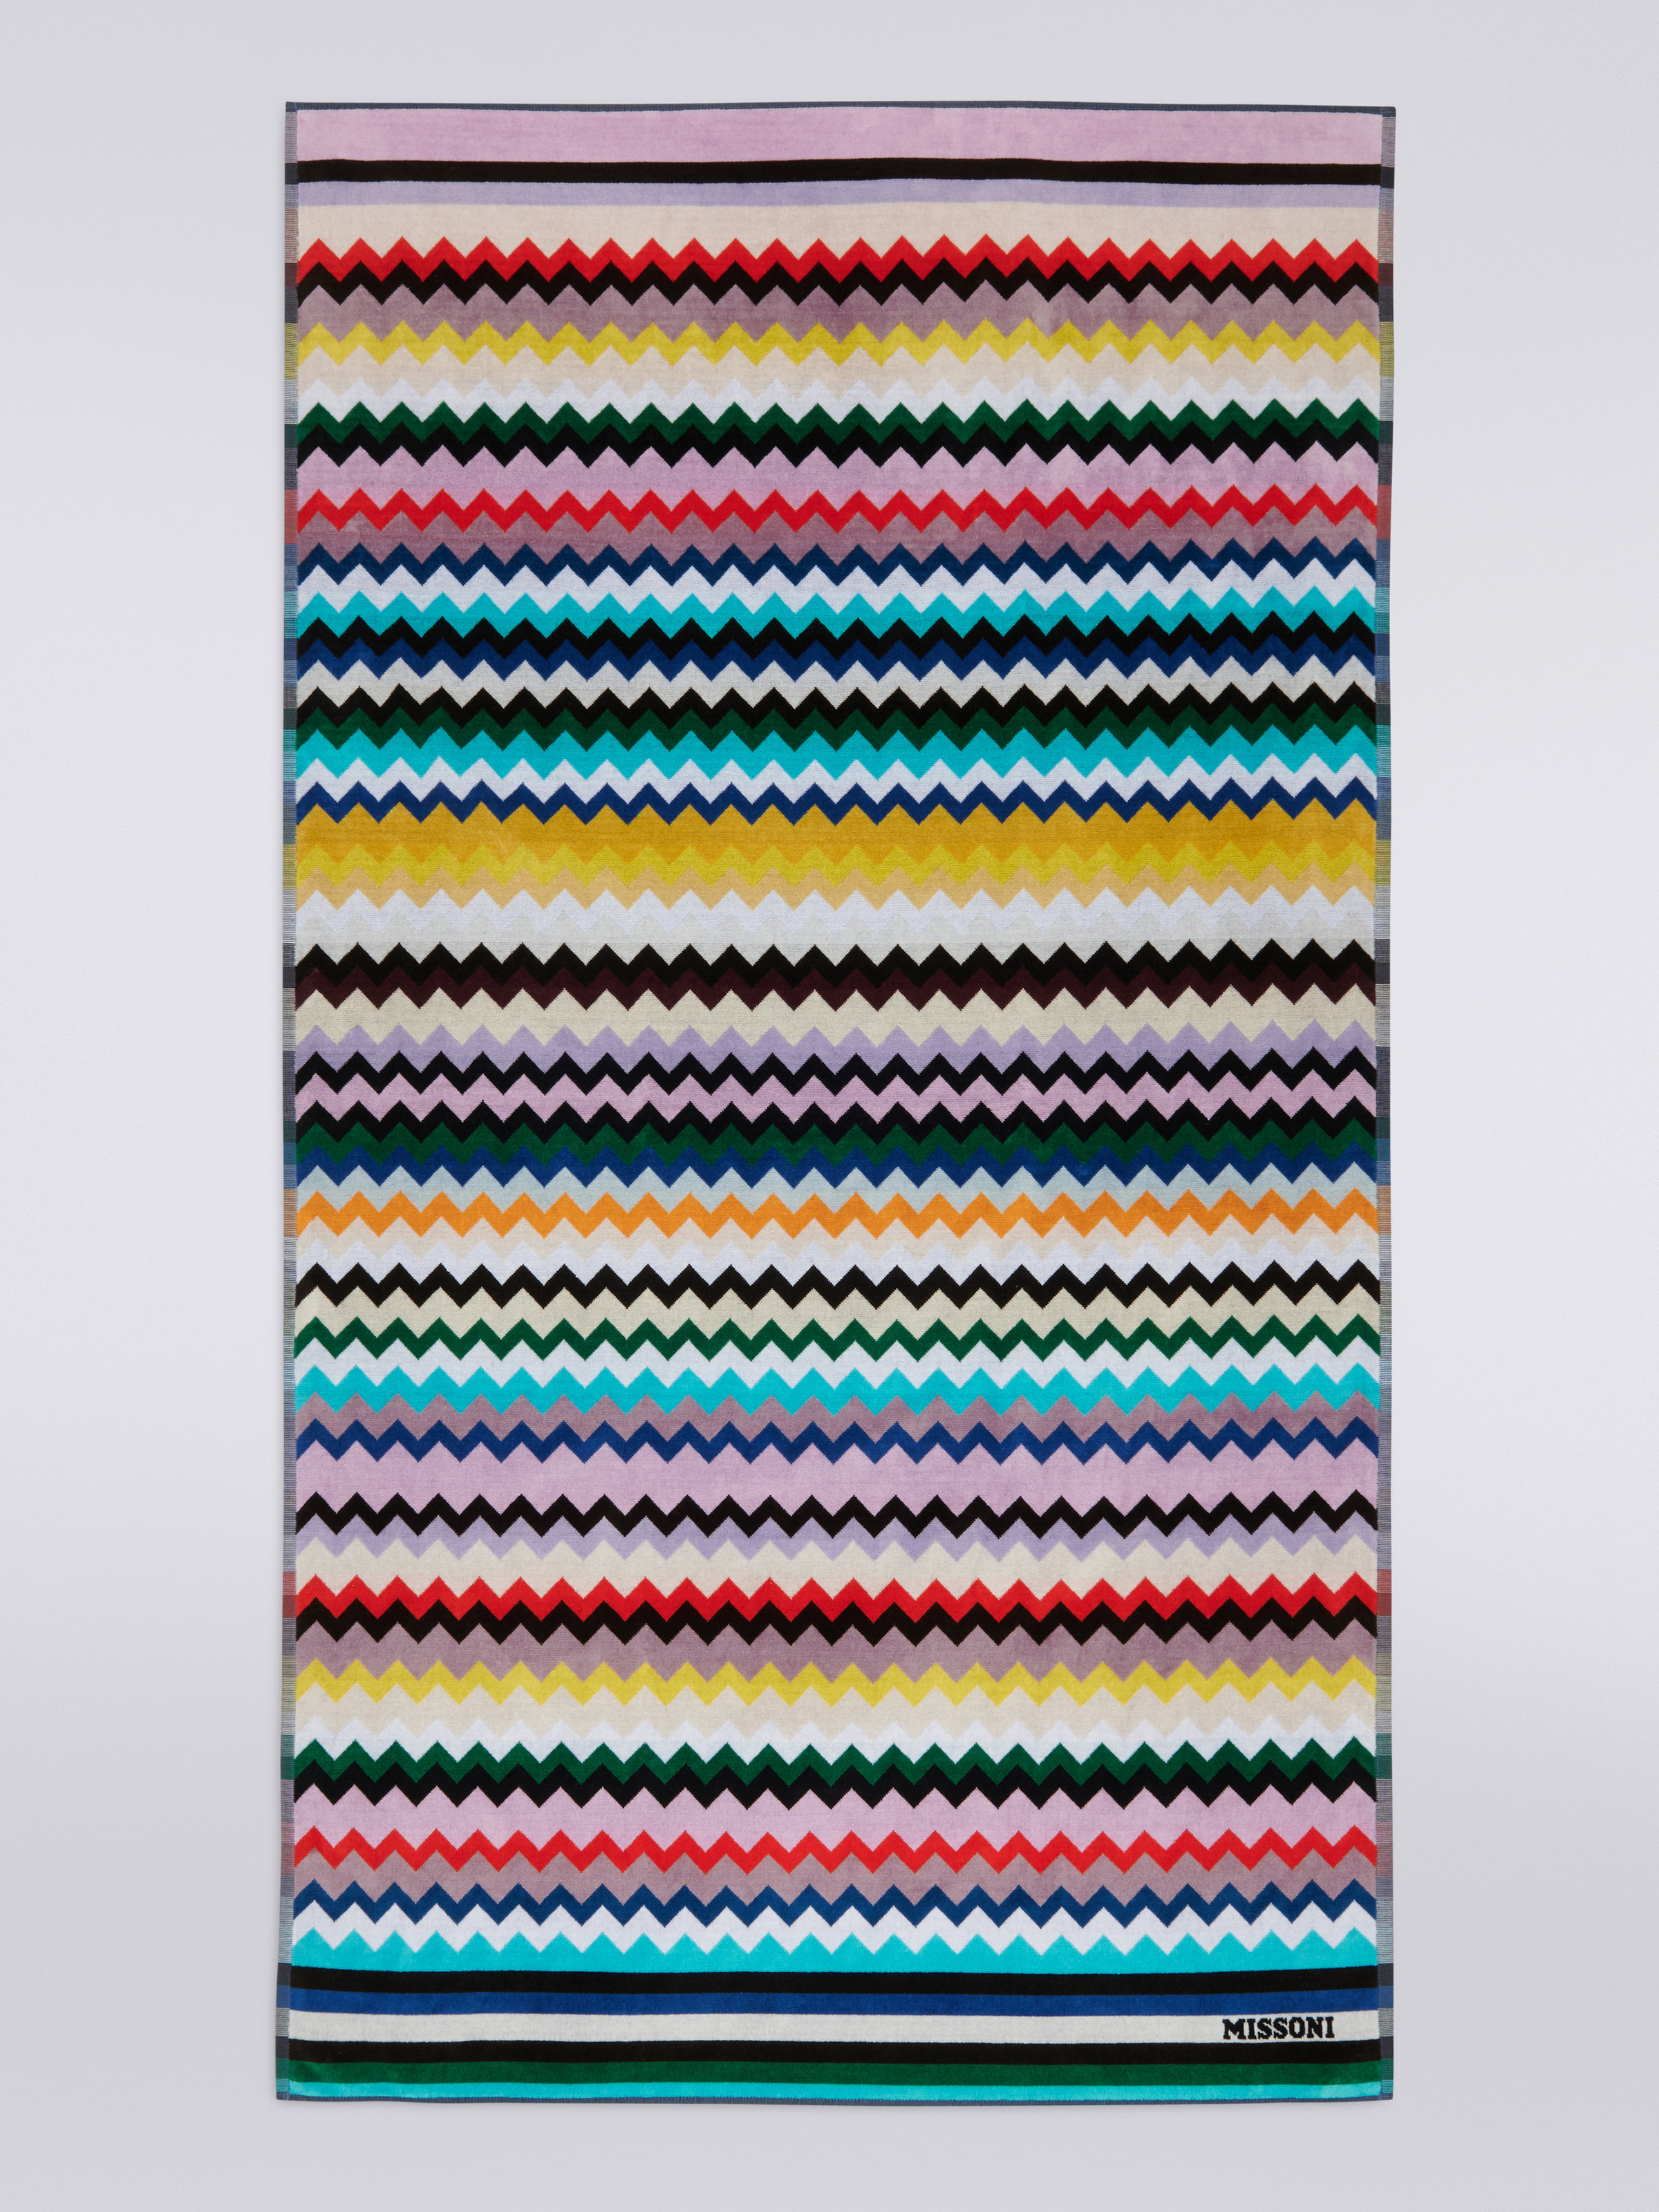 Strandtuch Carlie 100x180 cm aus Baumwollfrottee mit Chevronmuster, Mehrfarbig  - 1